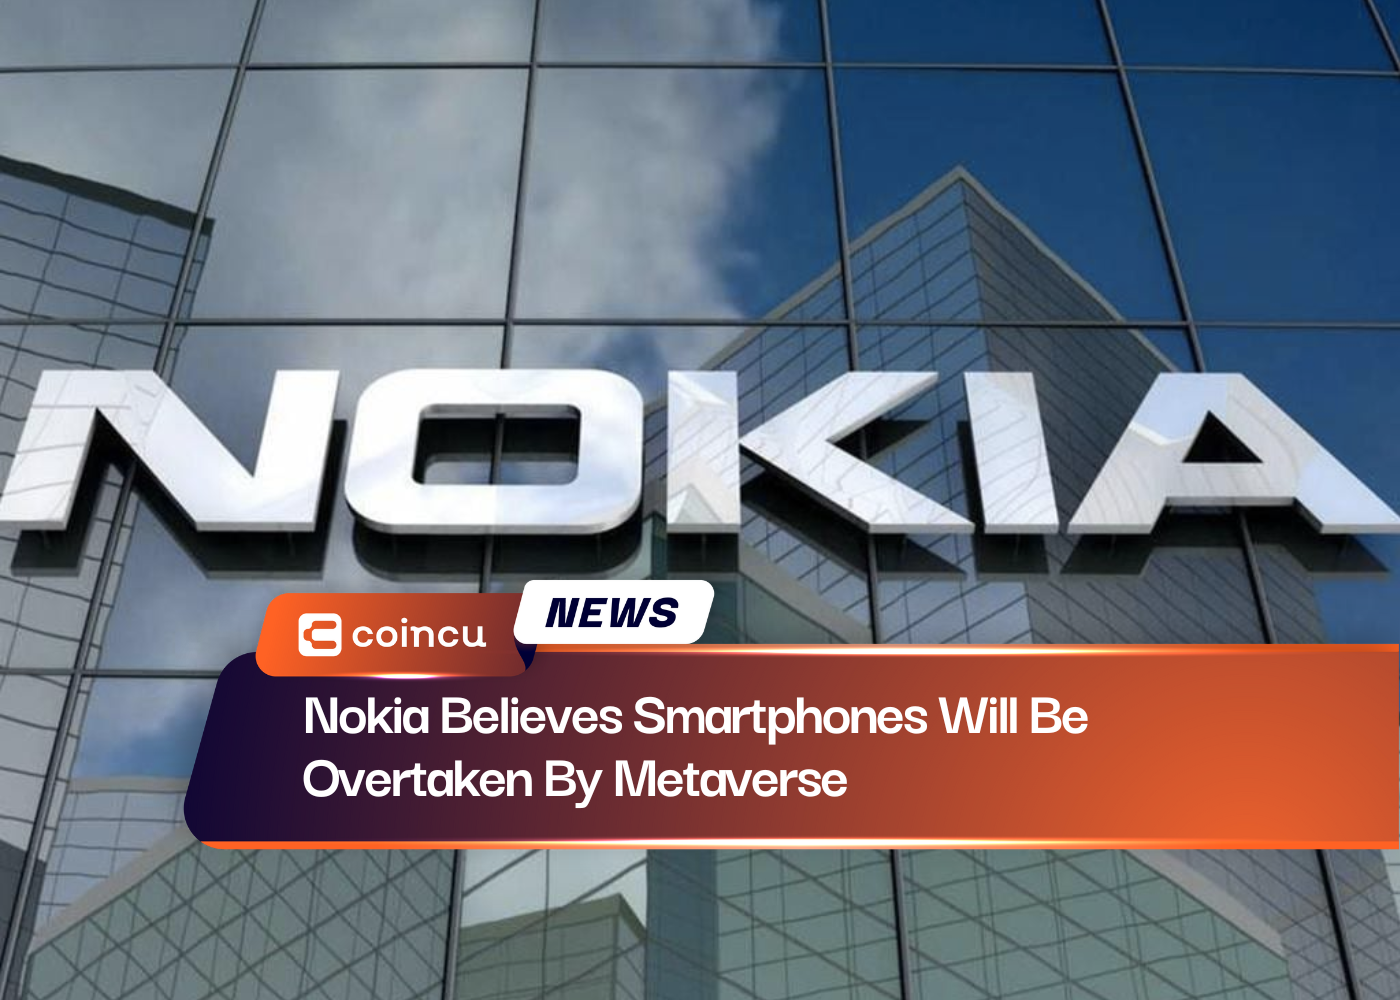 Nokia Believes Smartphones Will Be Overtaken By Metaverse